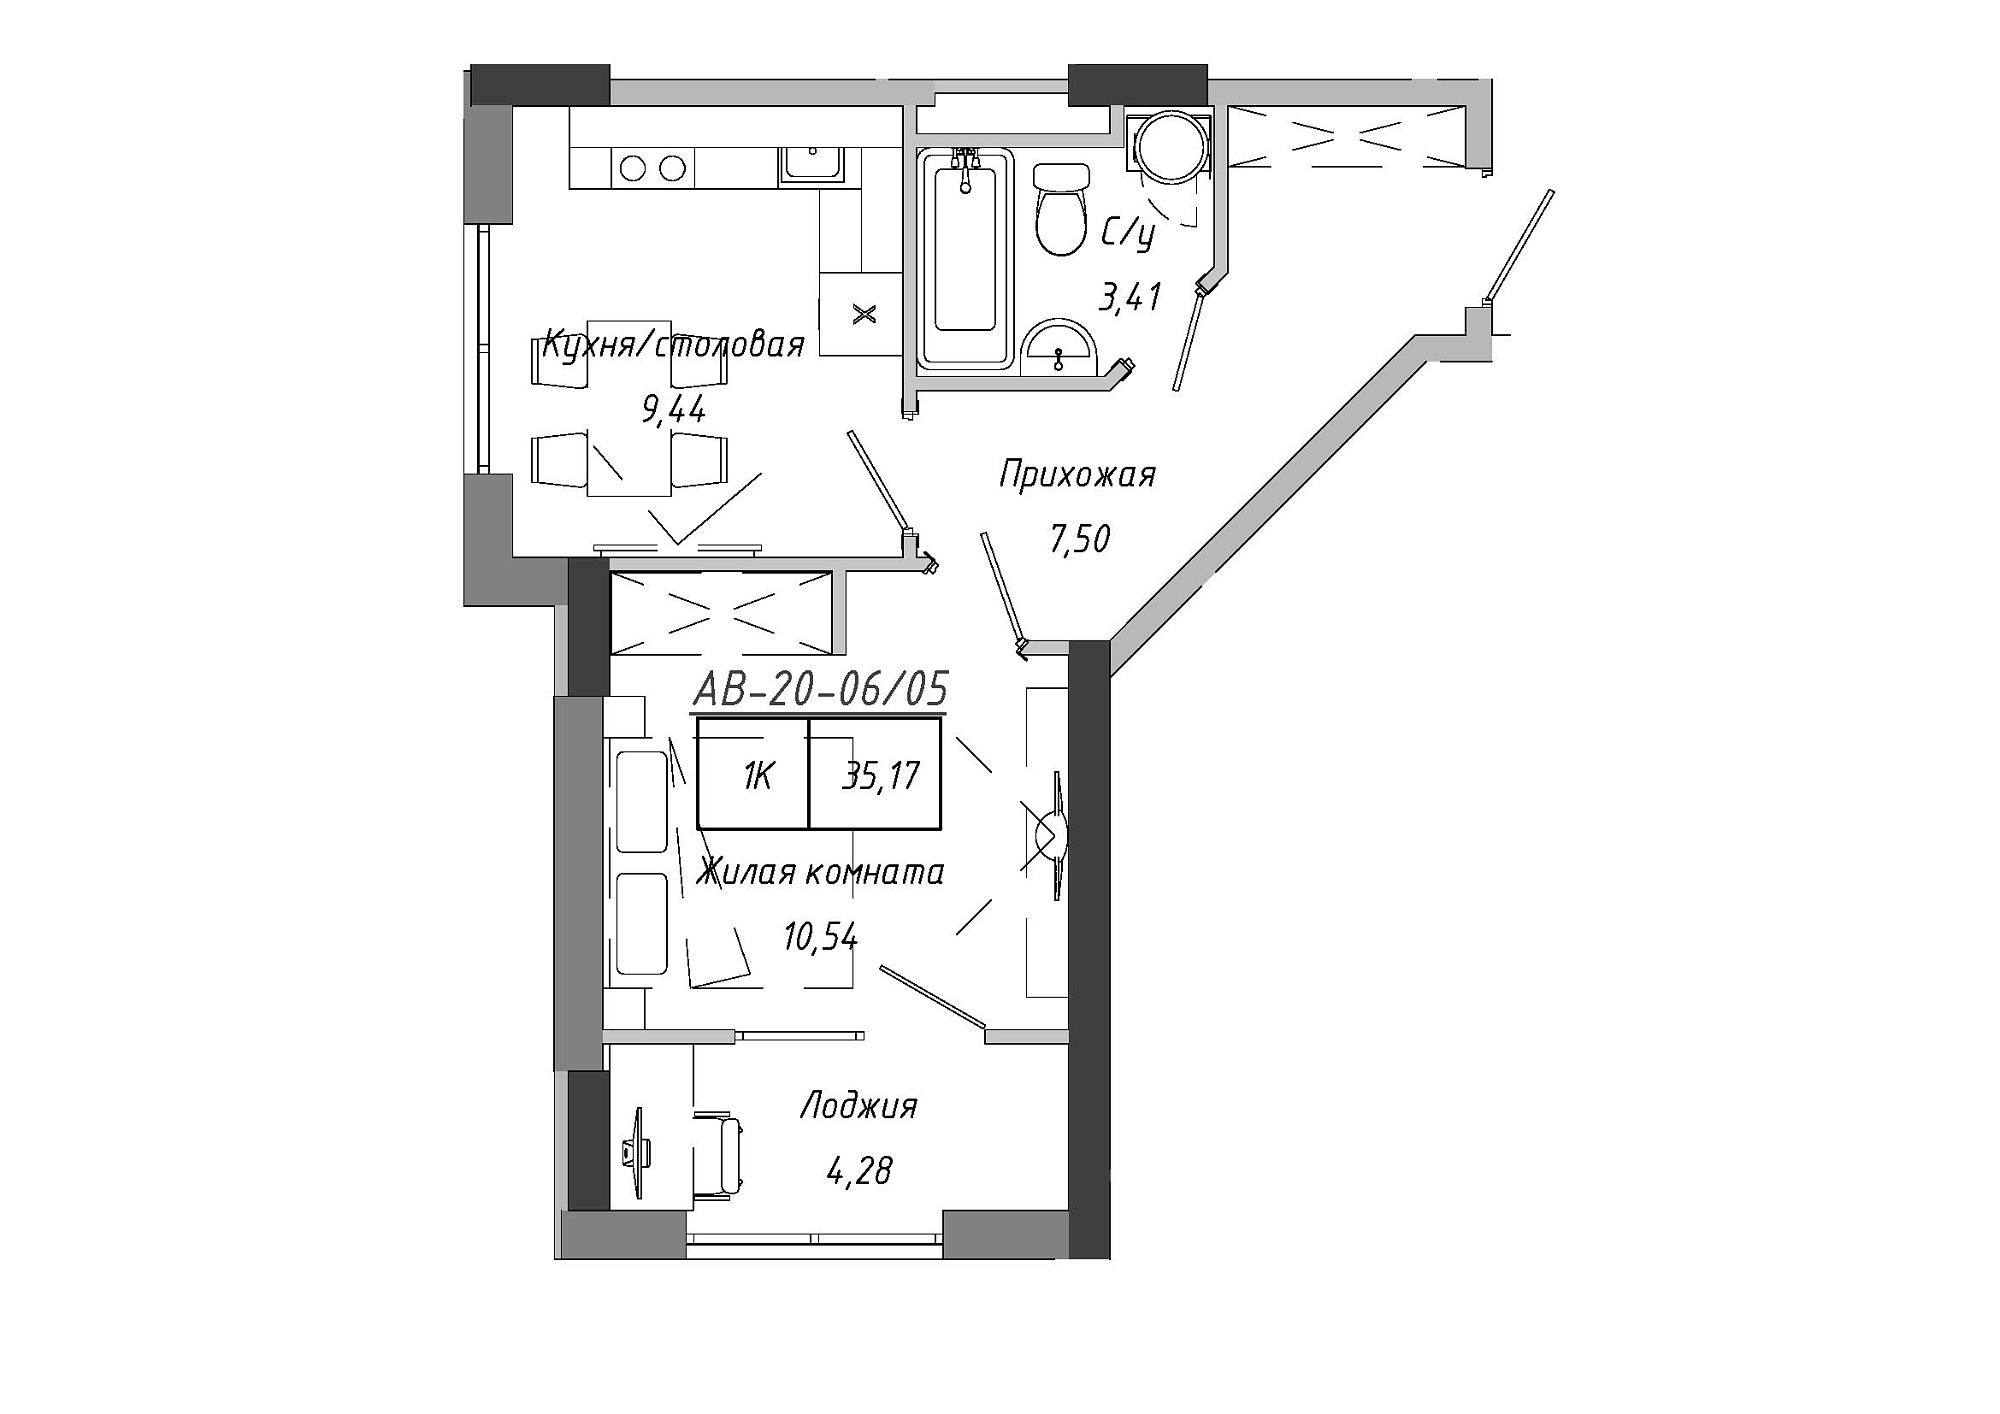 Планування 1-к квартира площею 33.55м2, AB-20-06/00005.